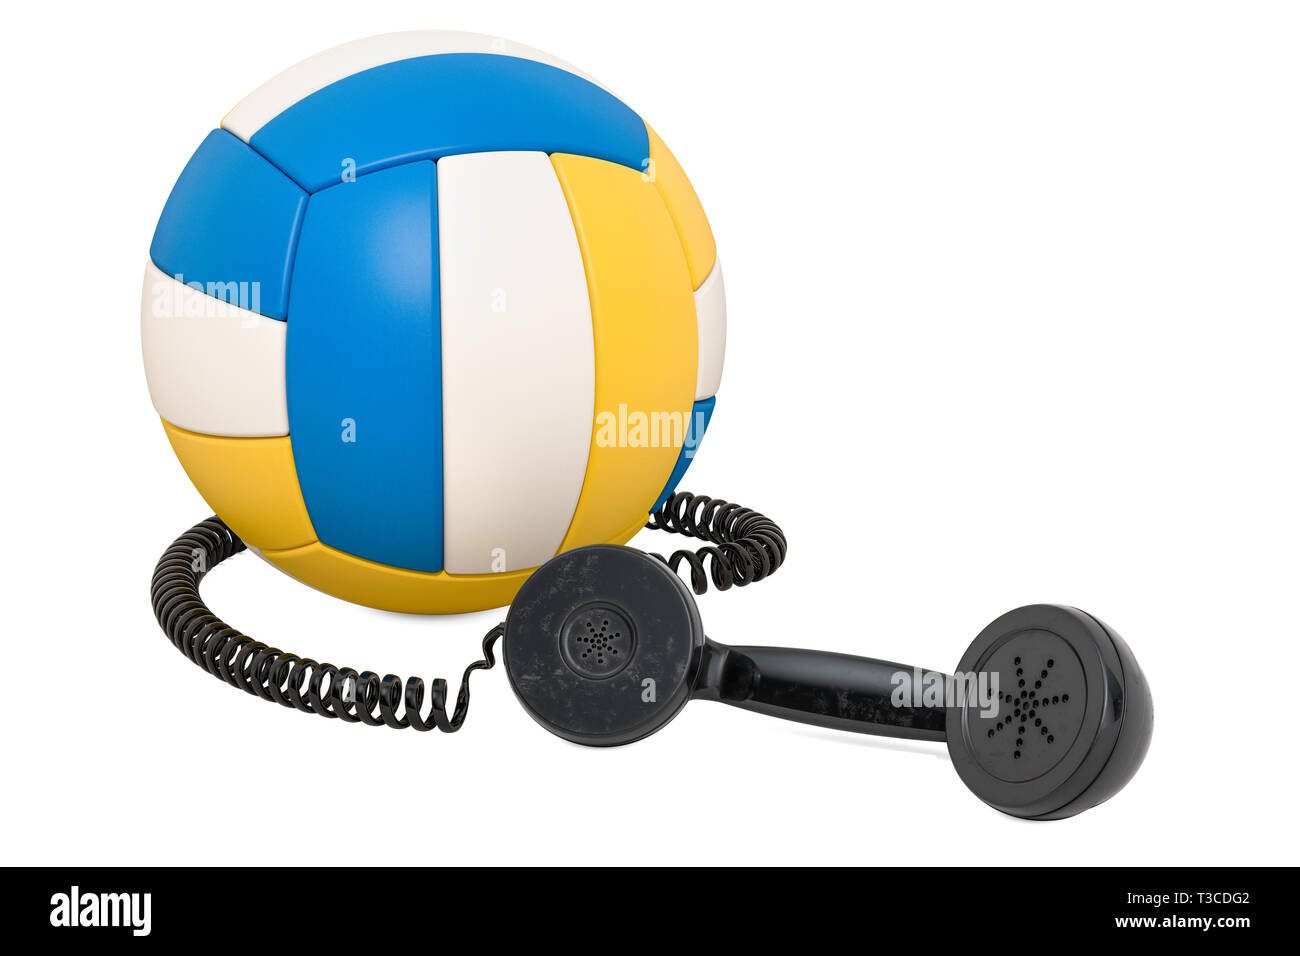 Ricevitore telefonico con sfera di pallavolo, rendering 3D isolati su sfondo bianco Foto Stock